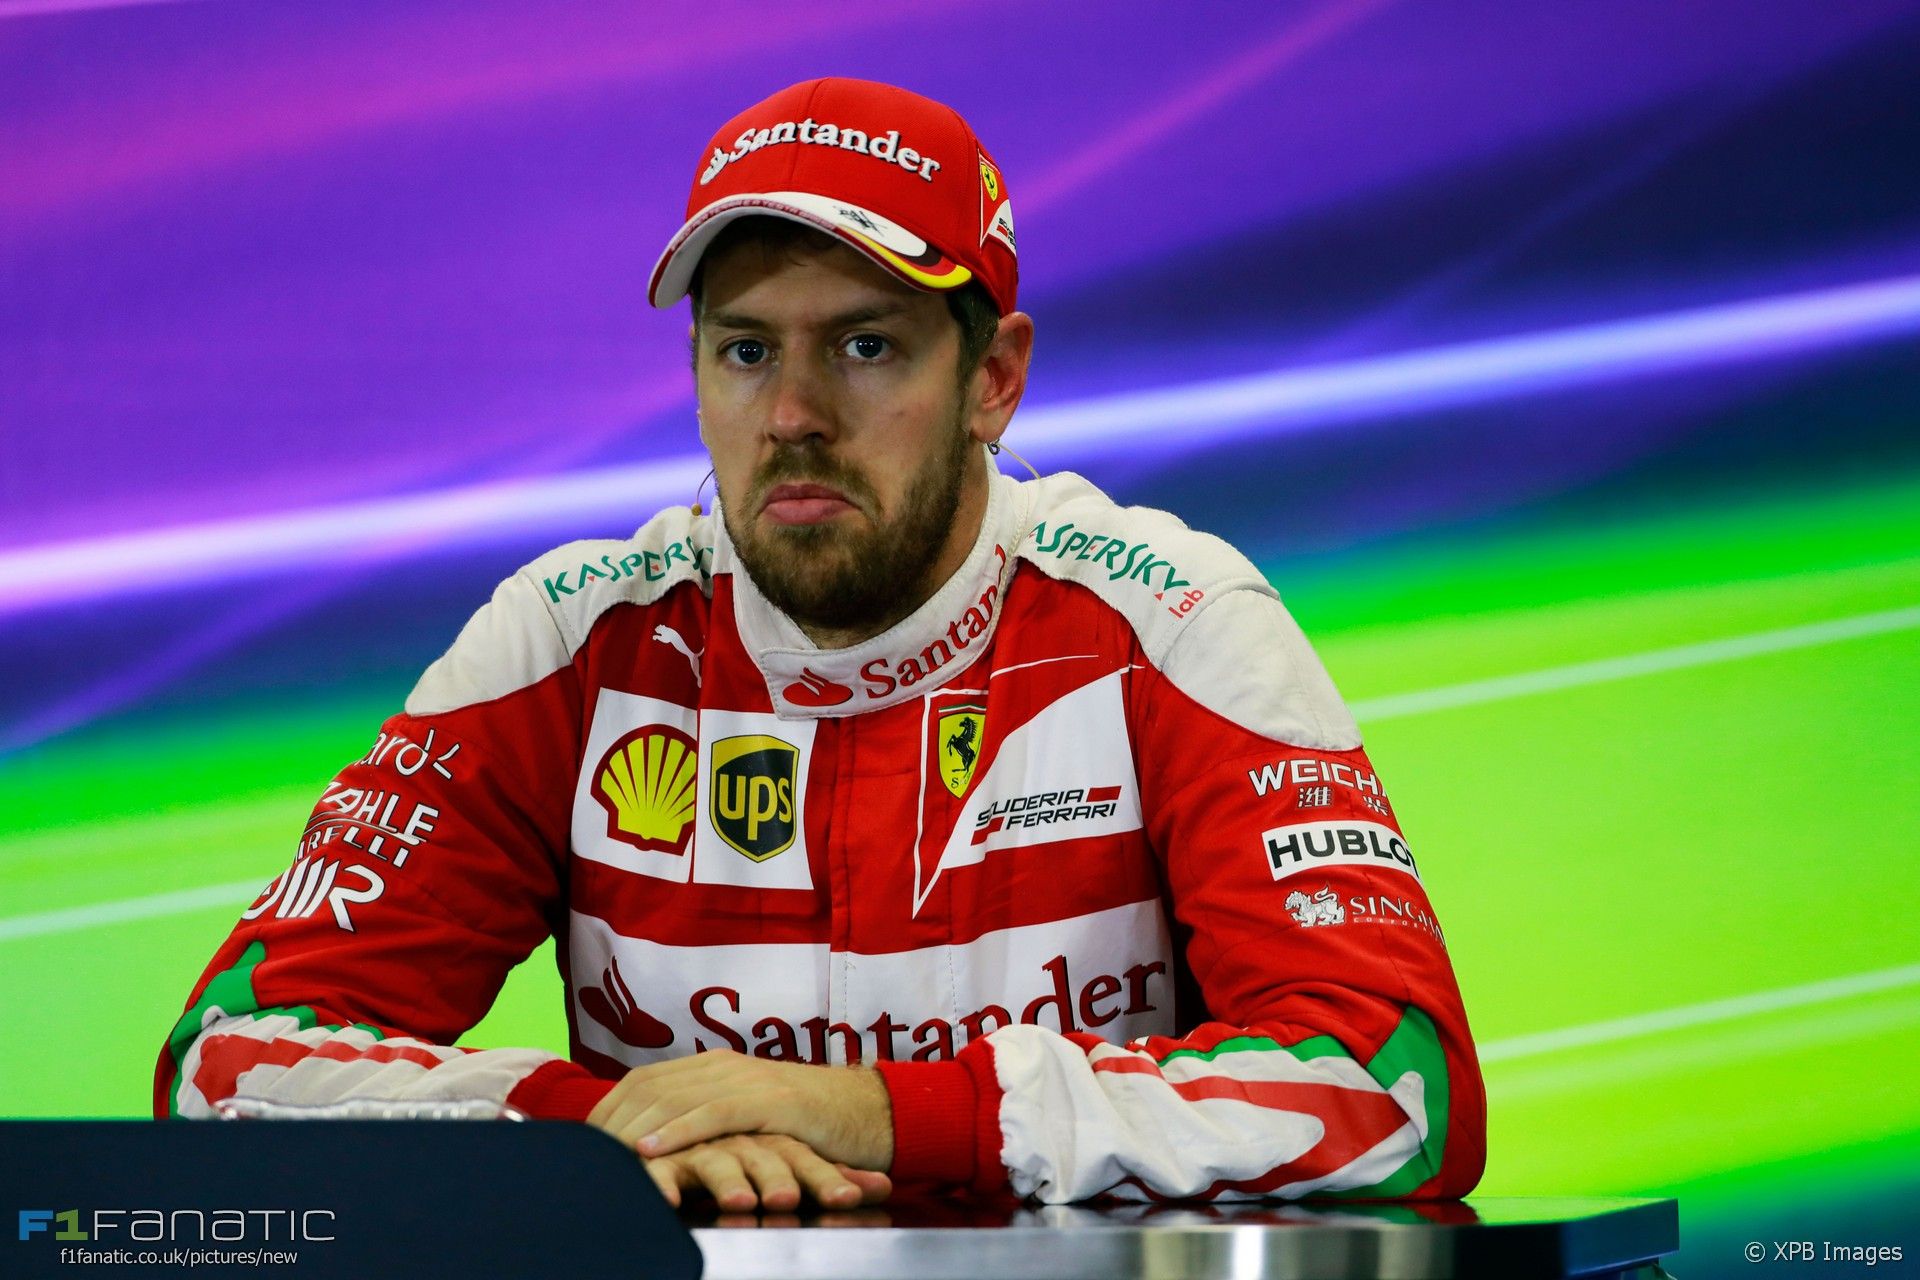 Assolutamente, credo sia questa la faccia di Vettel (foto da: f1fanatic.co.uk / XPB Images)